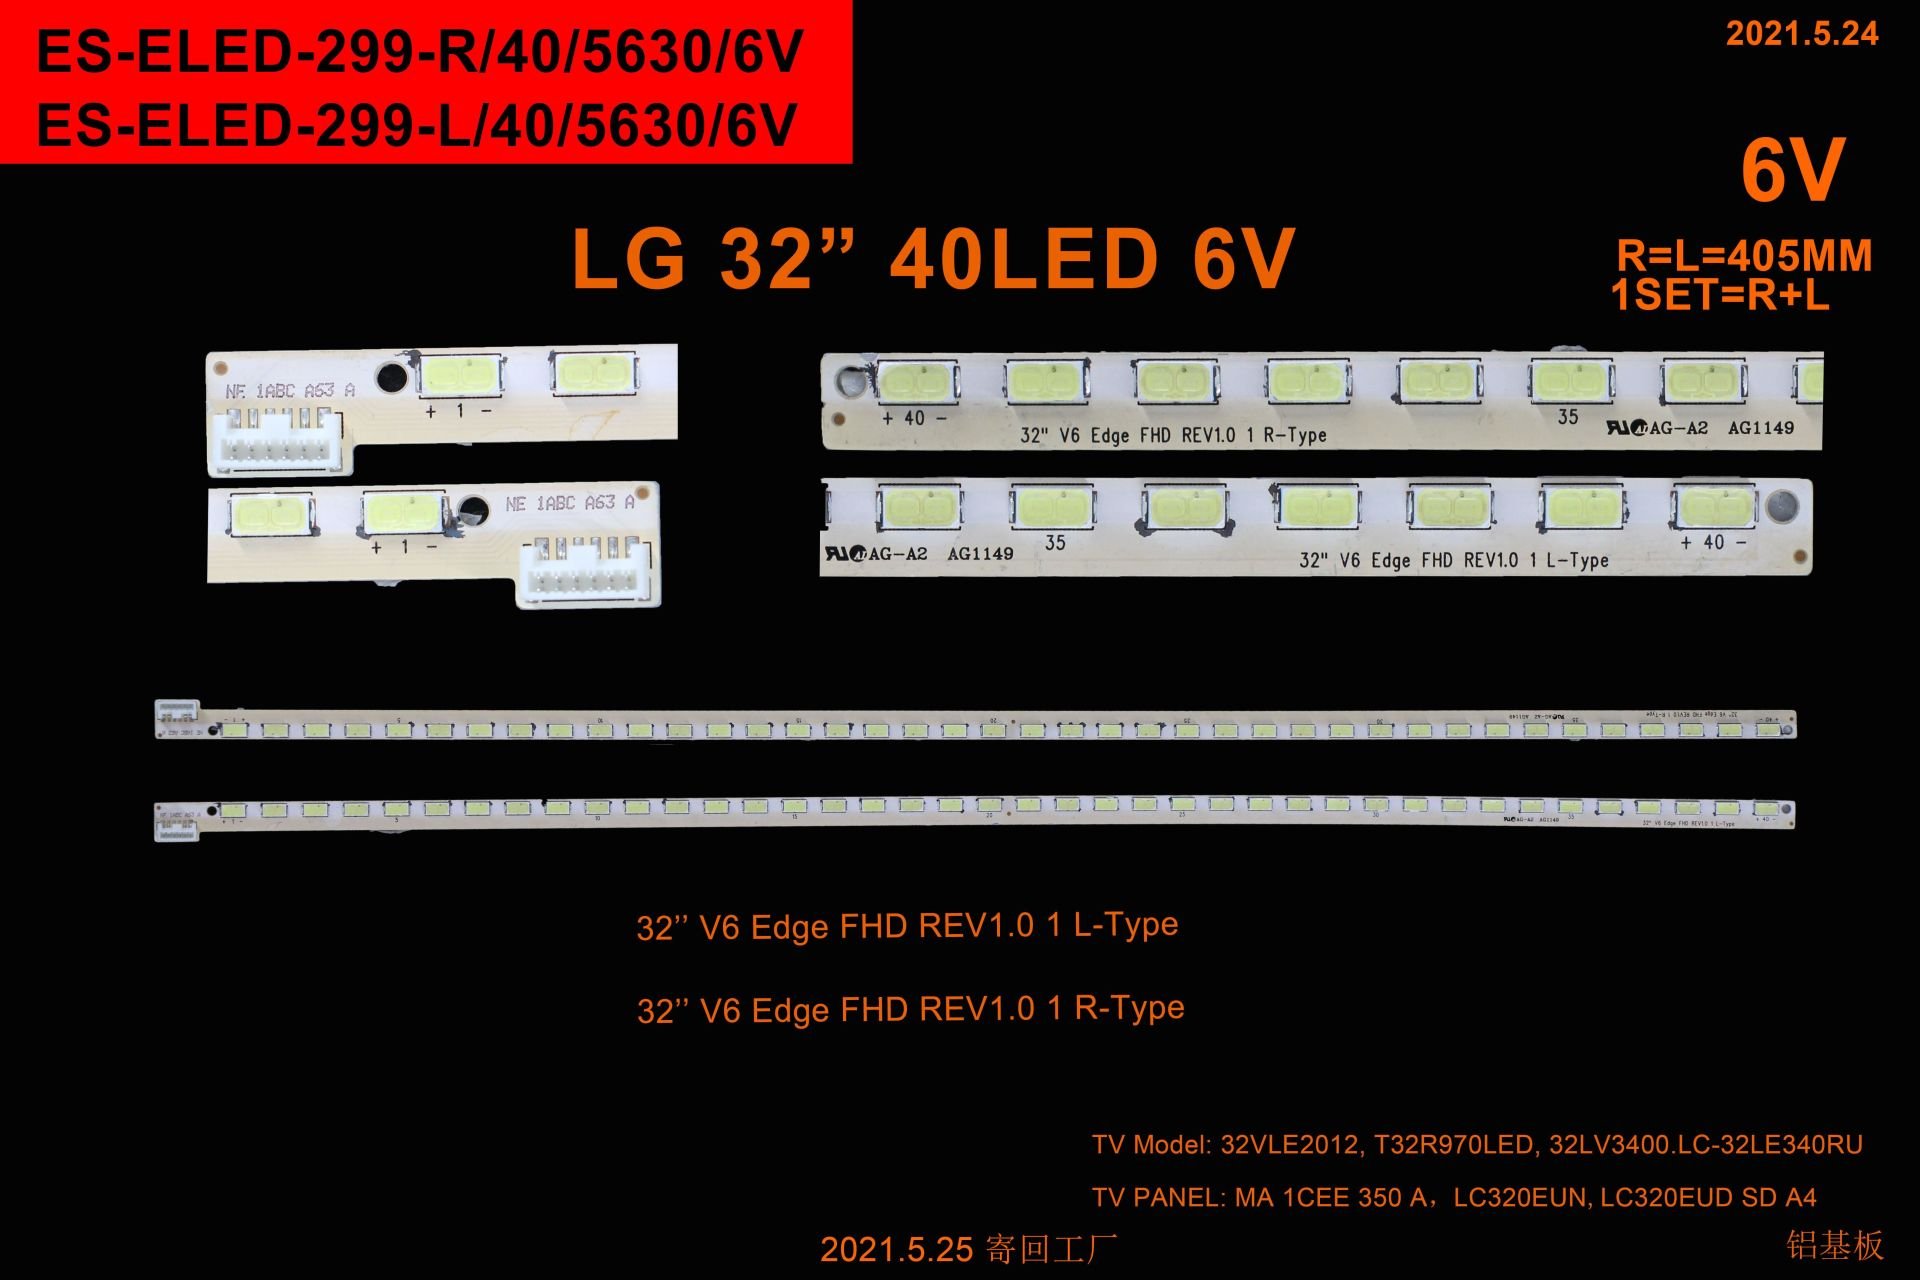 LCD LED-2342 2 Lİ ÇUBUK-32LV3400-C509-ELED299-WİNKEL